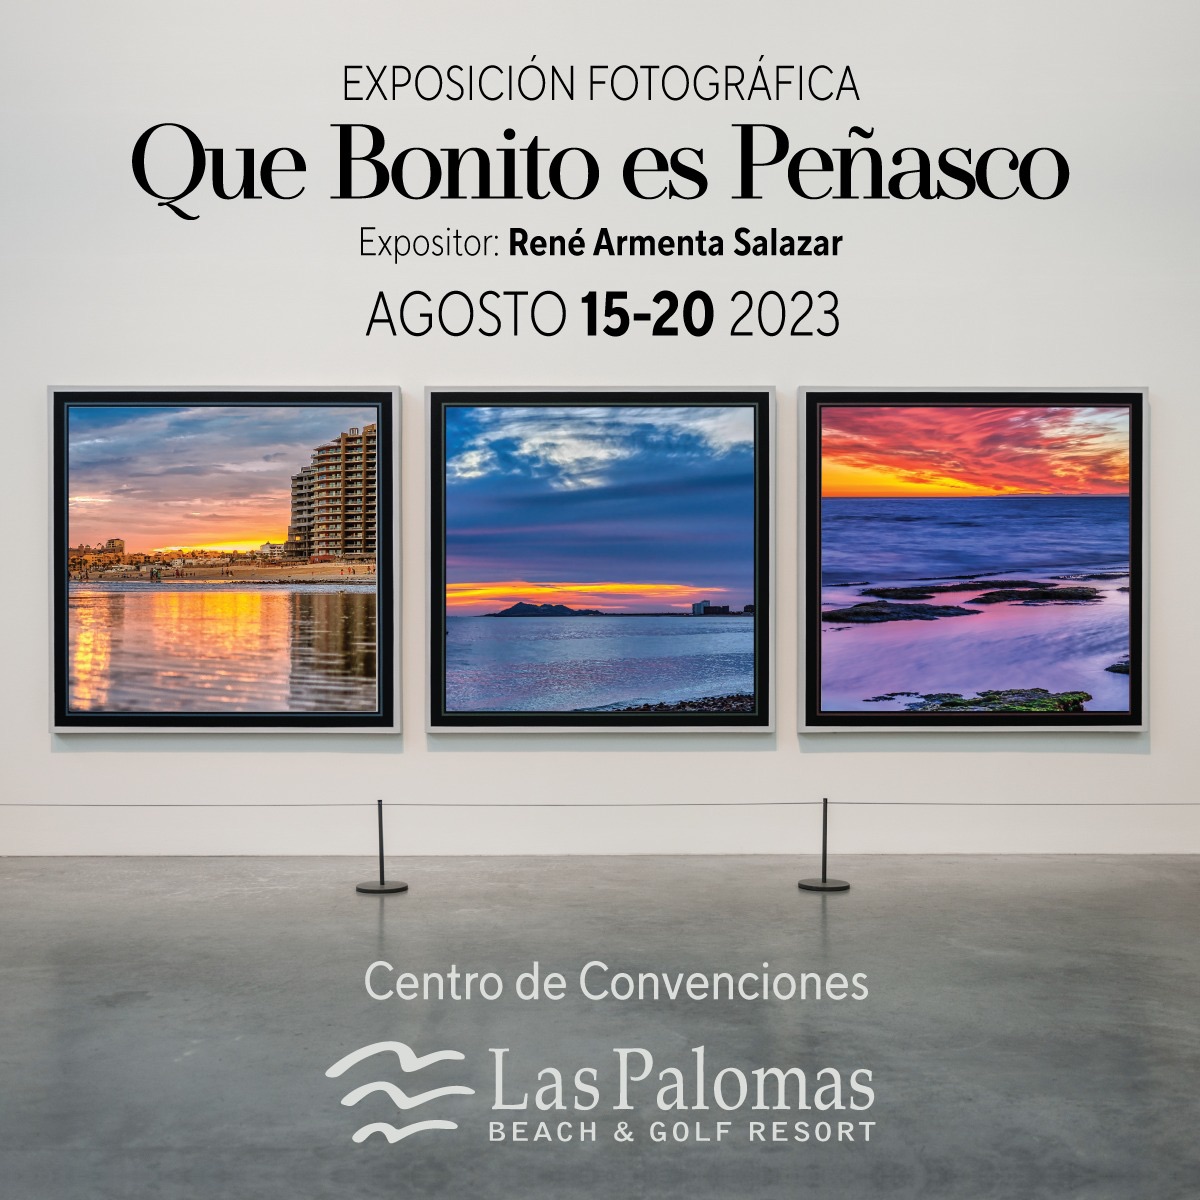 ago-las-palomas-photo-exhibit Qué Bonito es Peñasco - Photo Exhibit